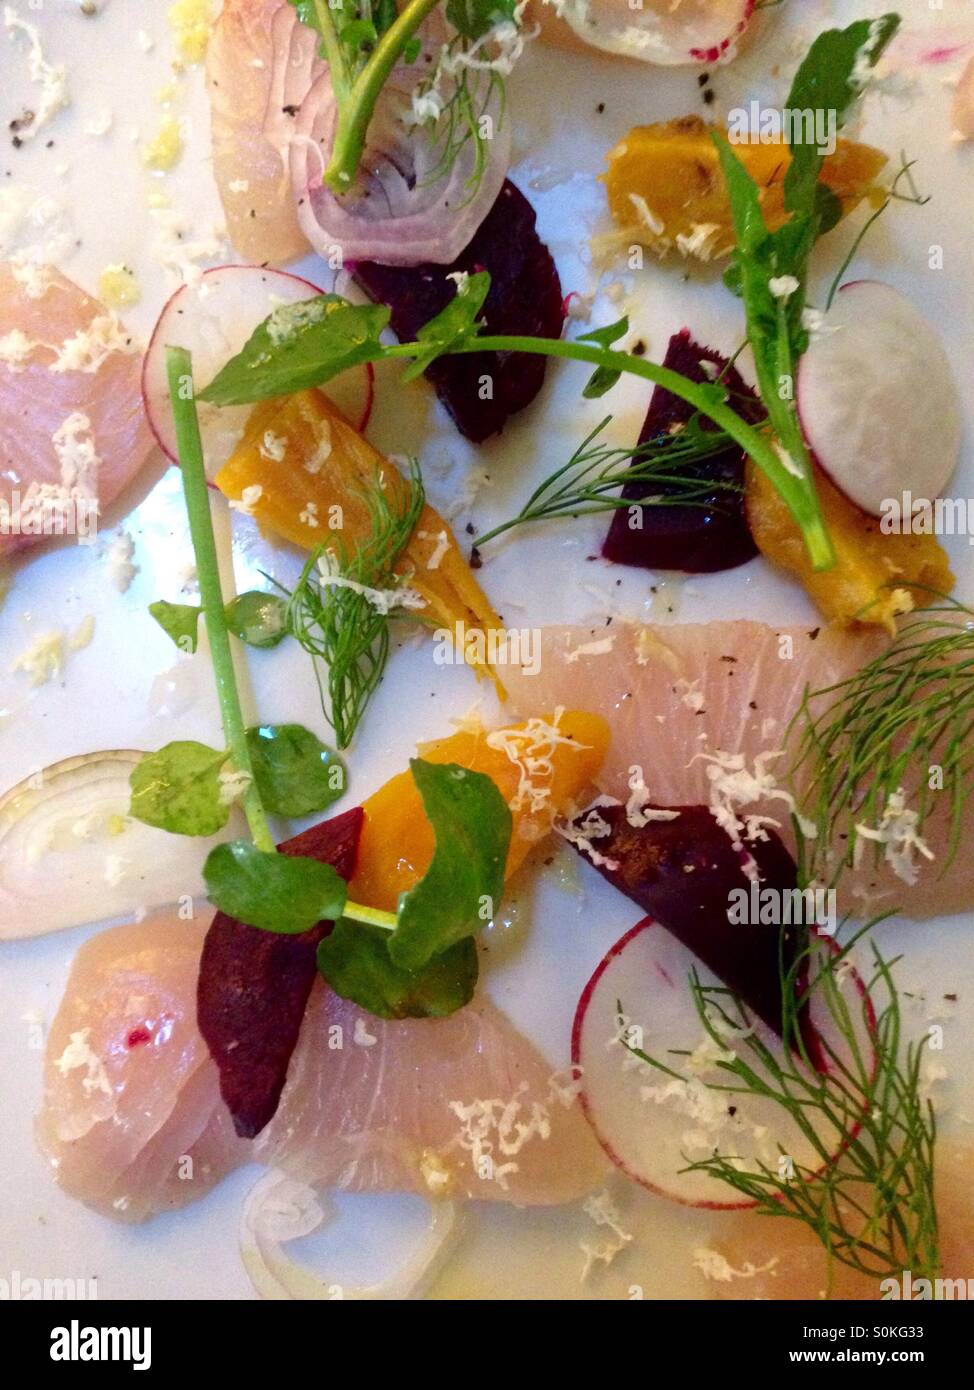 Fancy Food plaqué avec du poisson cru, de l'aneth, radis et légumes marinés Banque D'Images